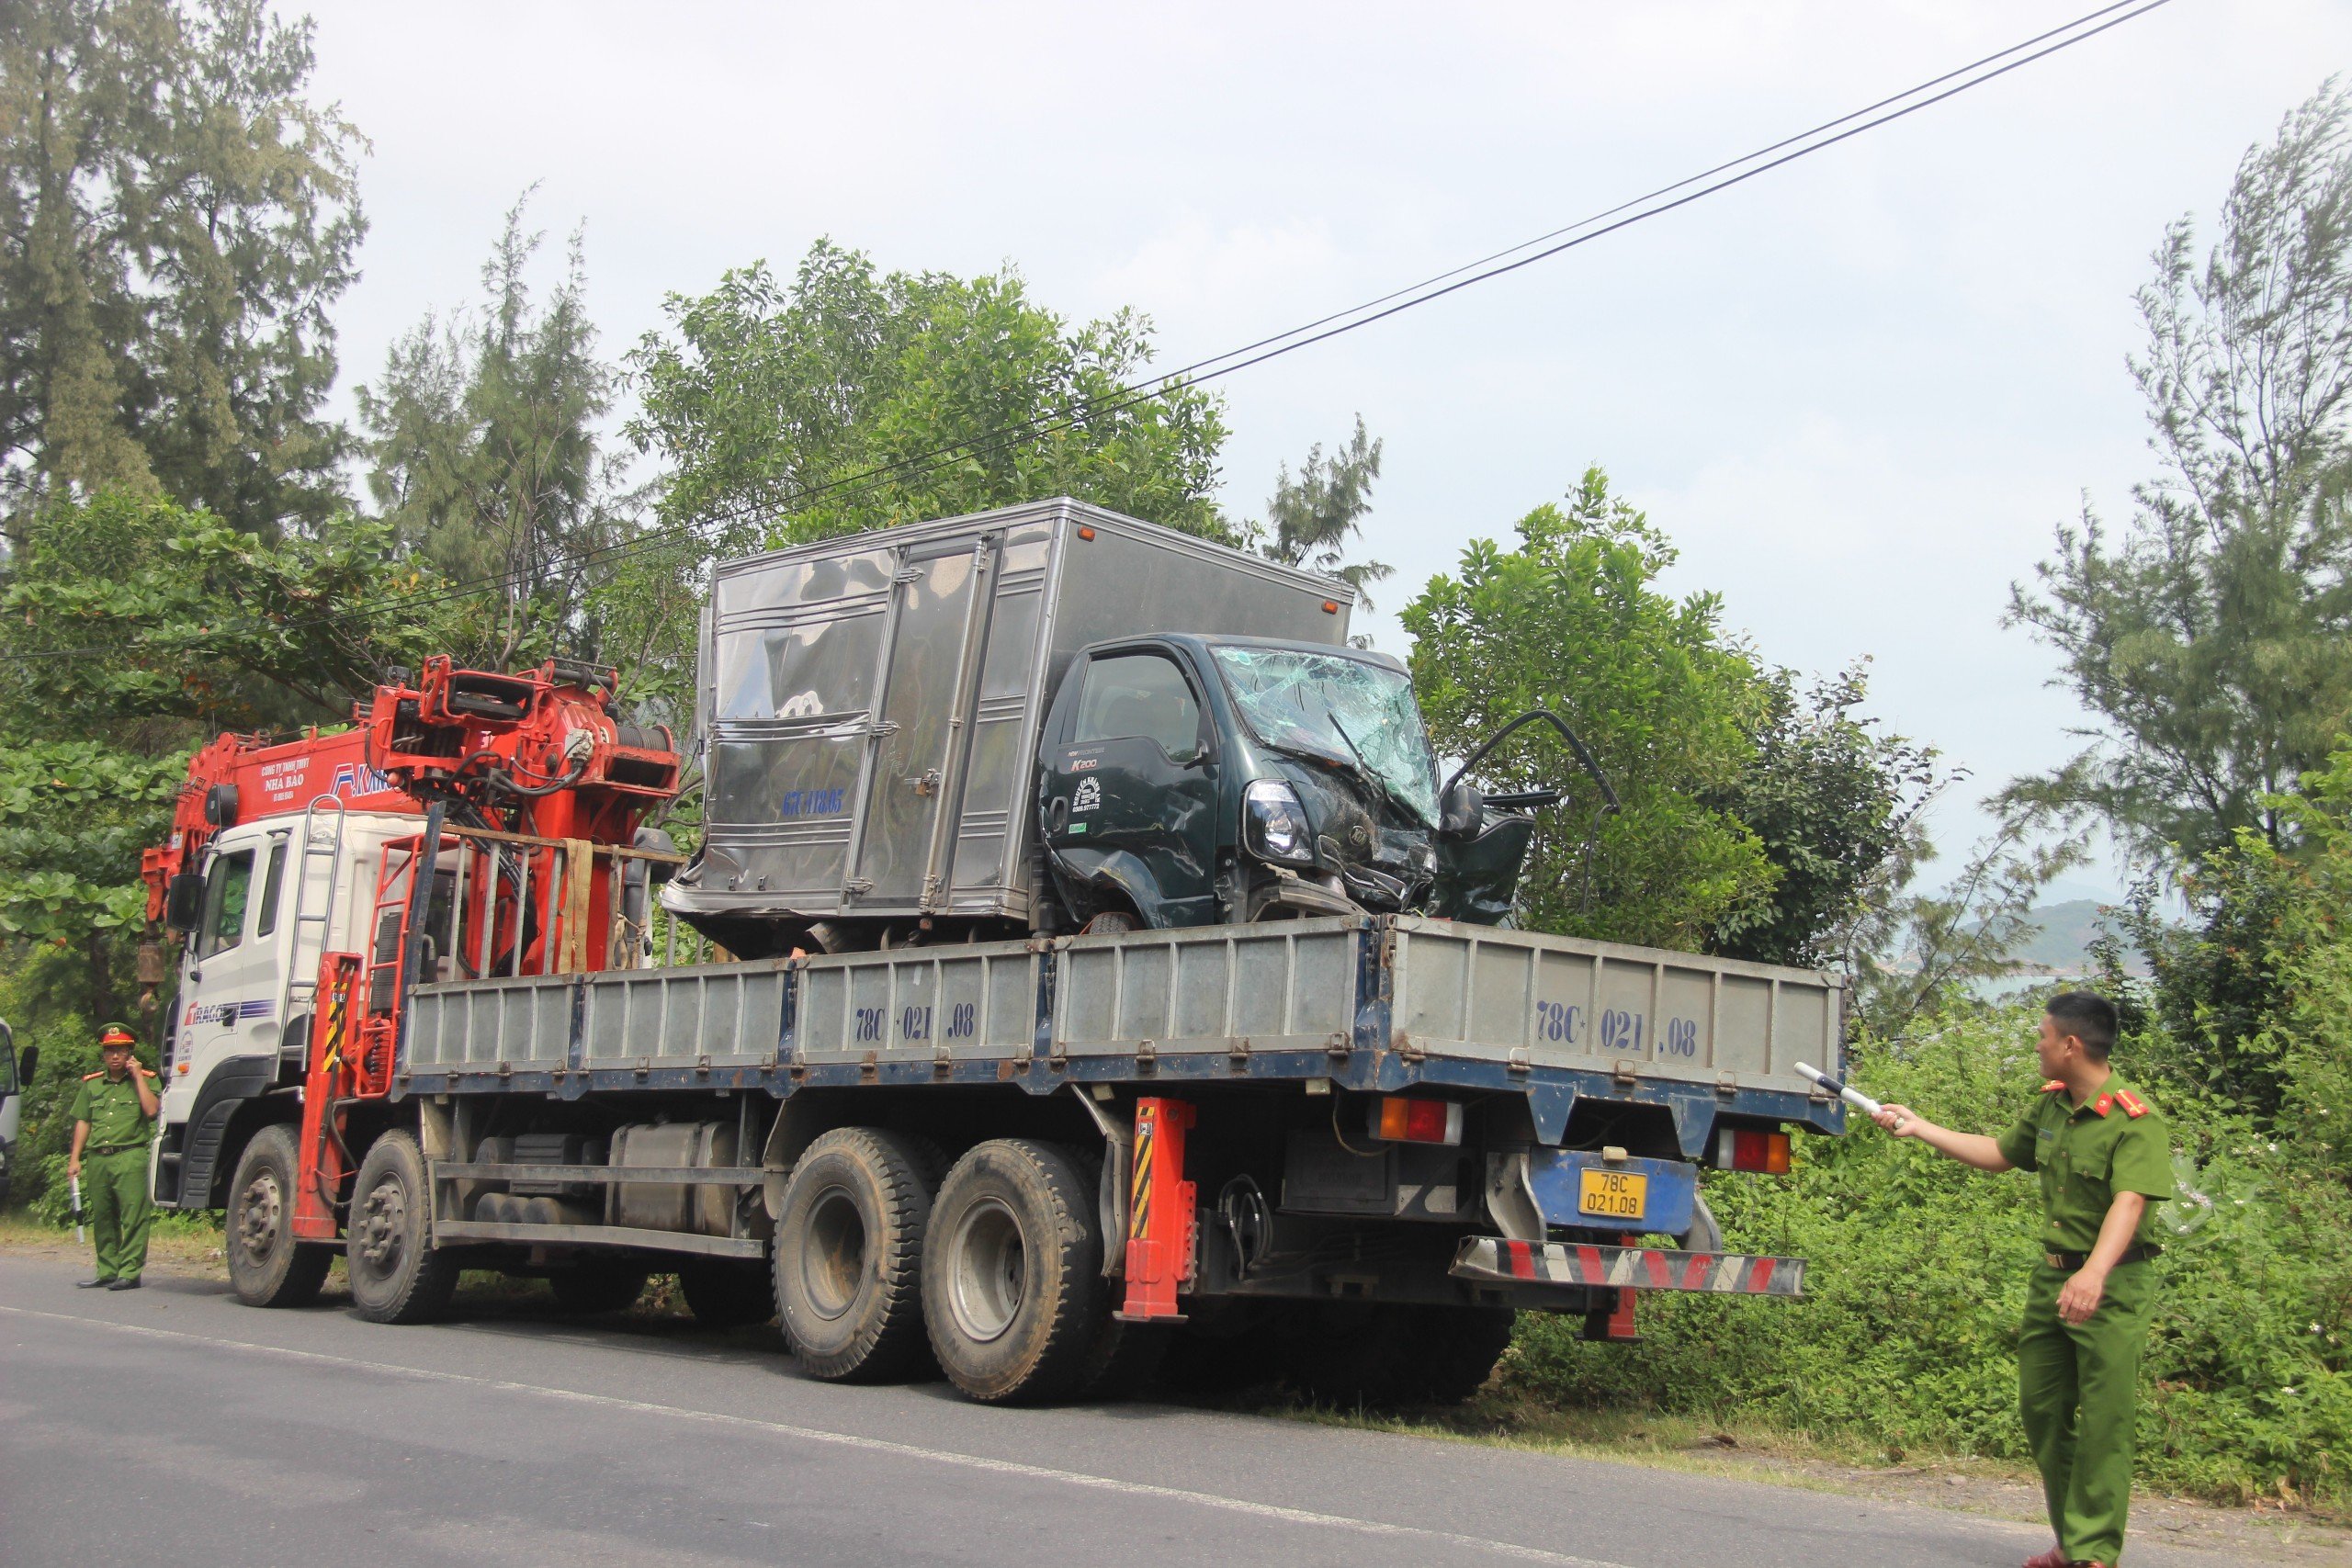 4 xe tải nát bét sau cú tông liên hoàn trên đoạn đường đèo giáp ranh Bình Định và Phú Yên- Ảnh 5.